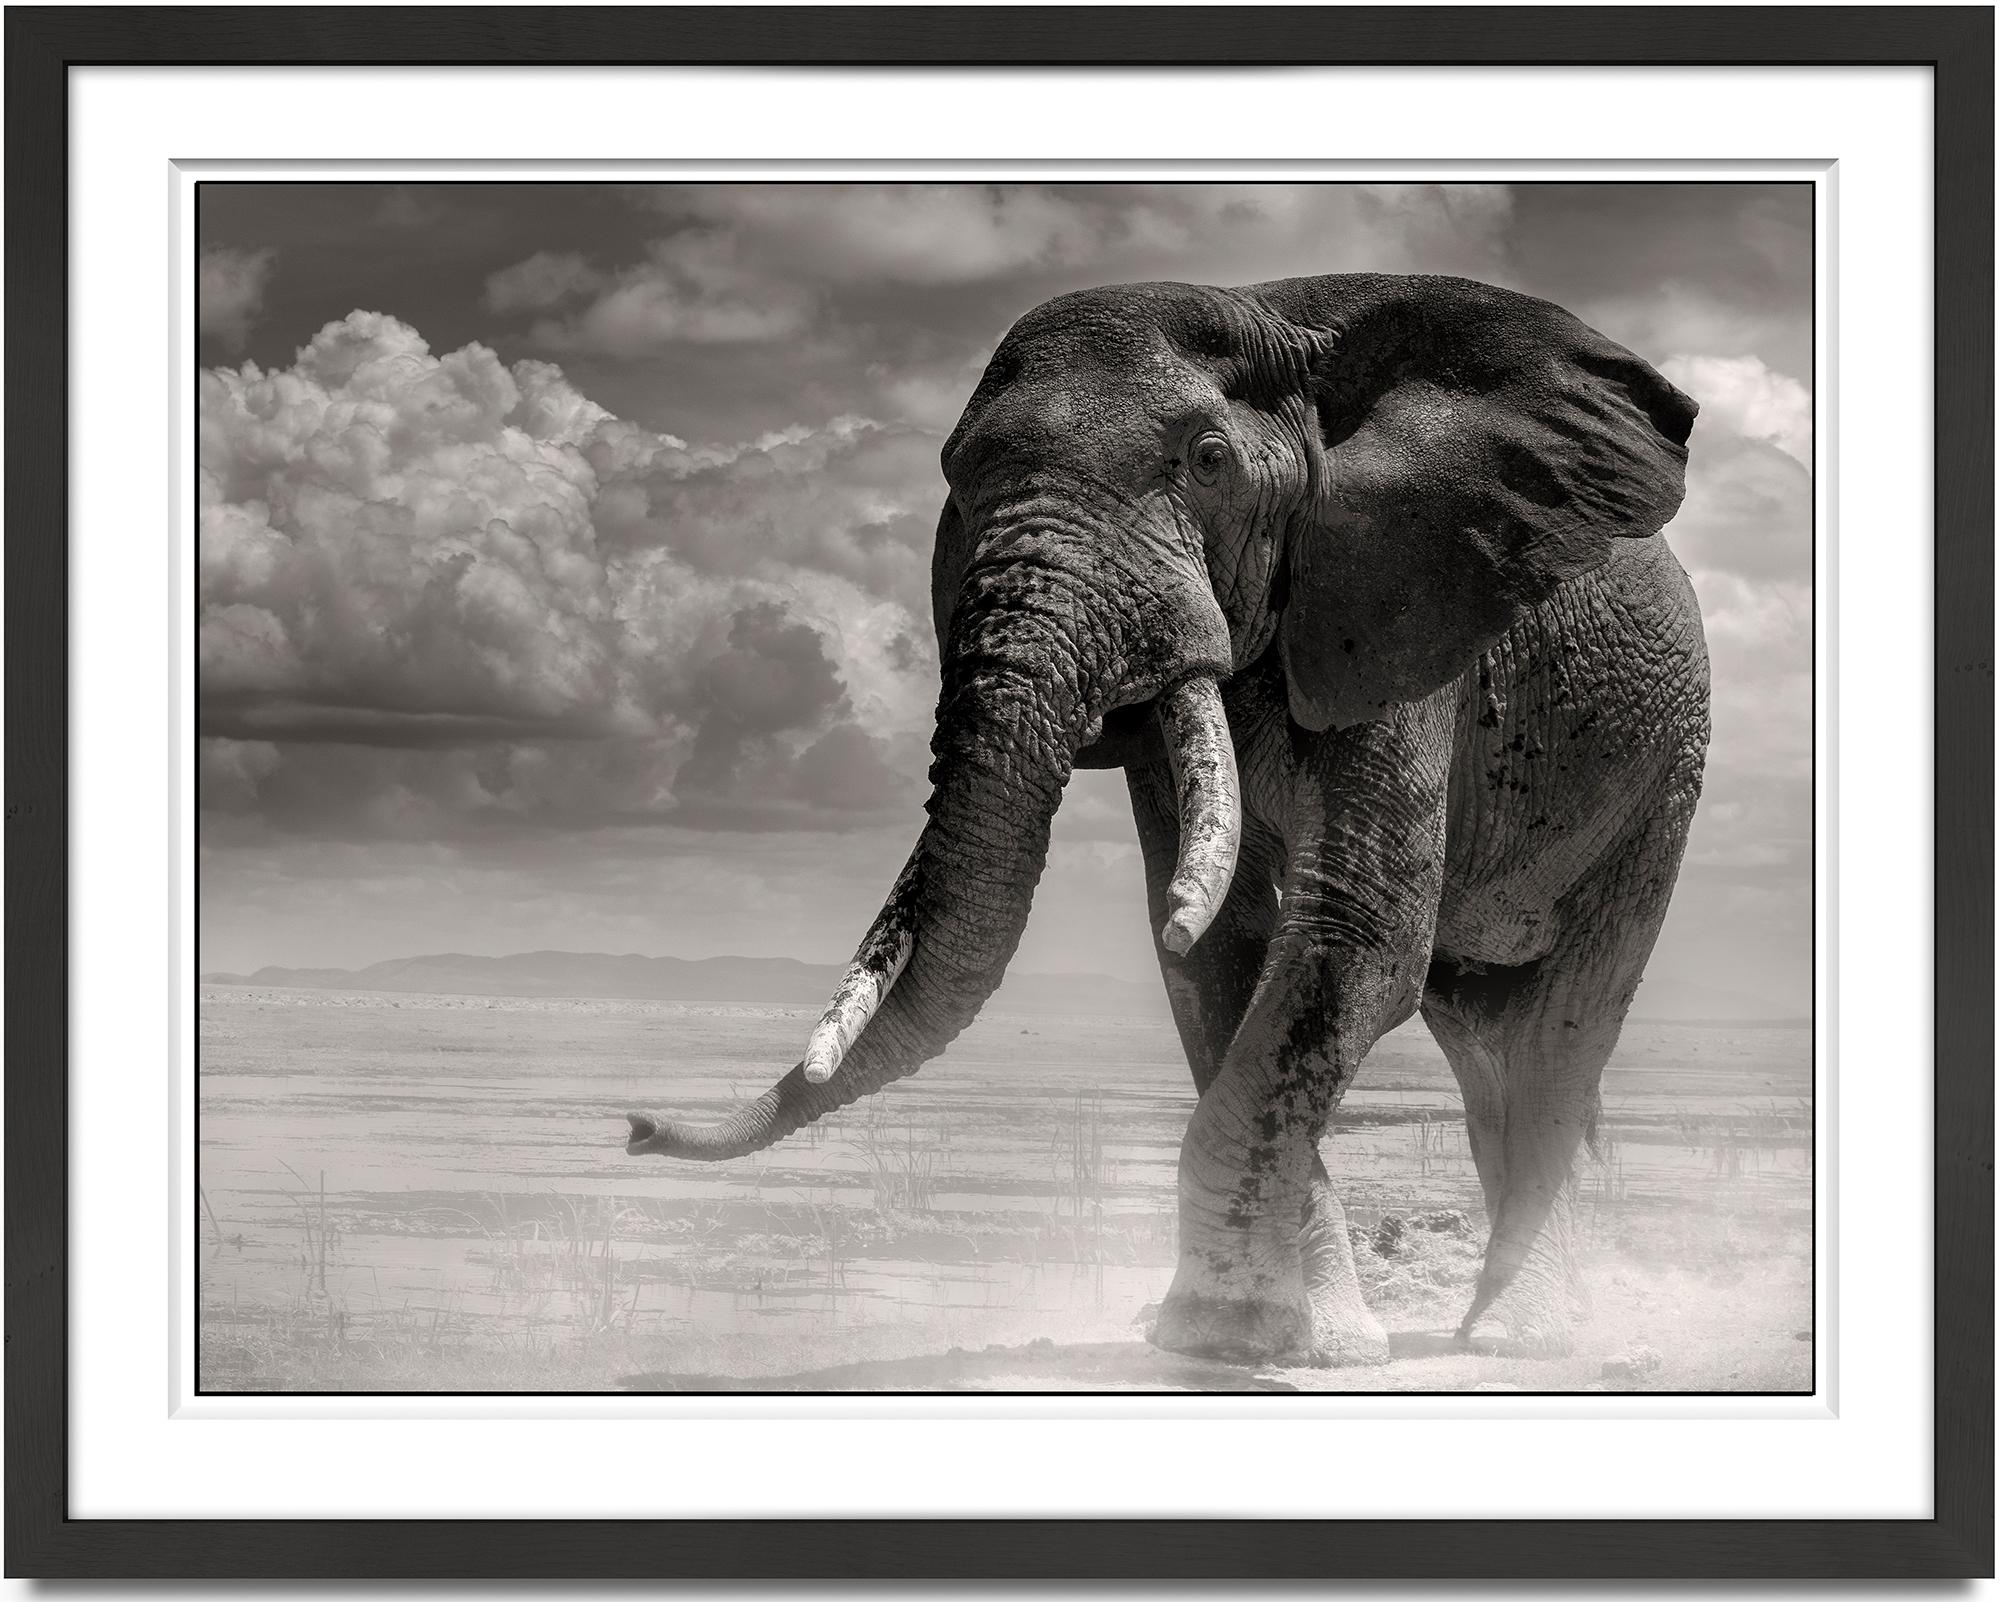 Elefantenschwanz aus dem Marsch, Schwarz-Weiß-Fotografie, Tier – Photograph von Joachim Schmeisser